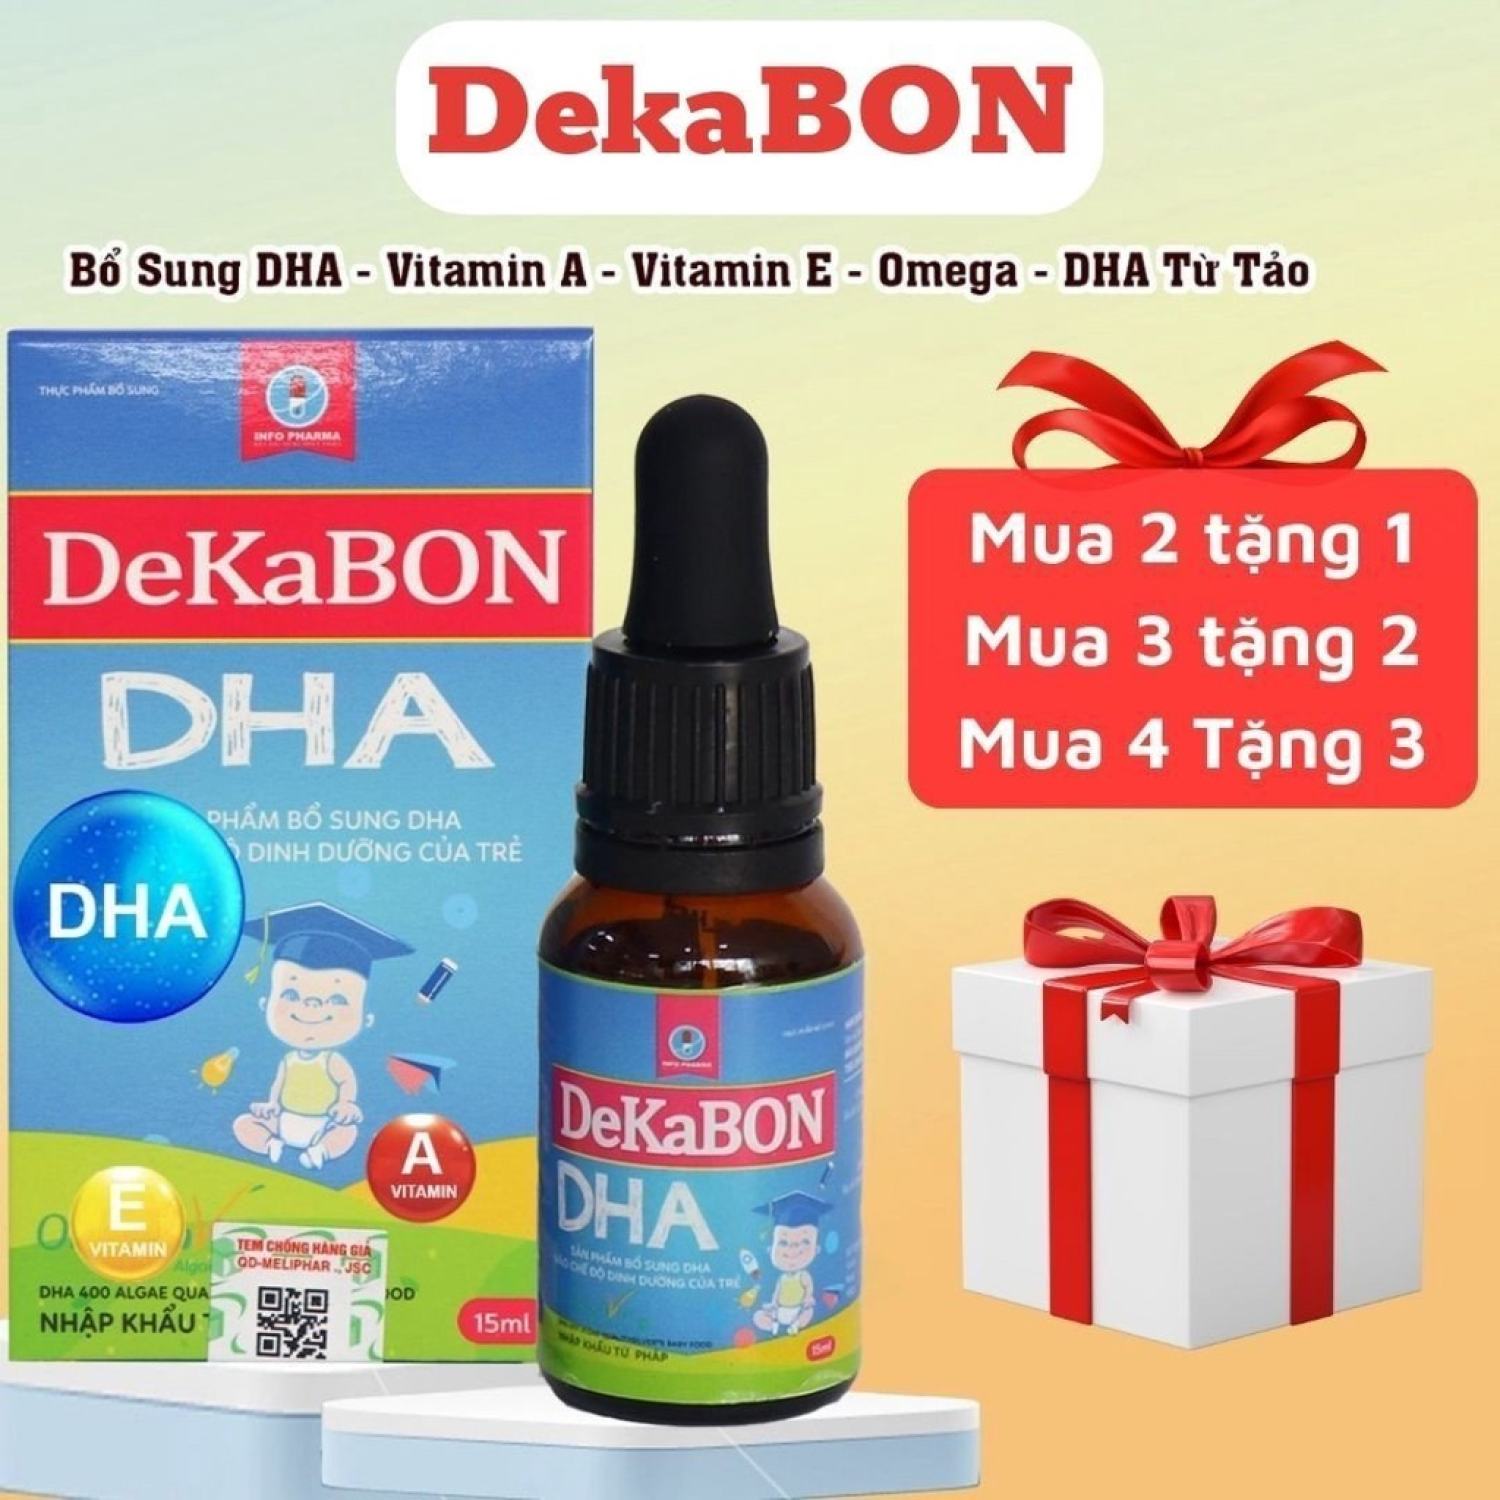 Dekabon DHA 15ml bổ sung Vitamin